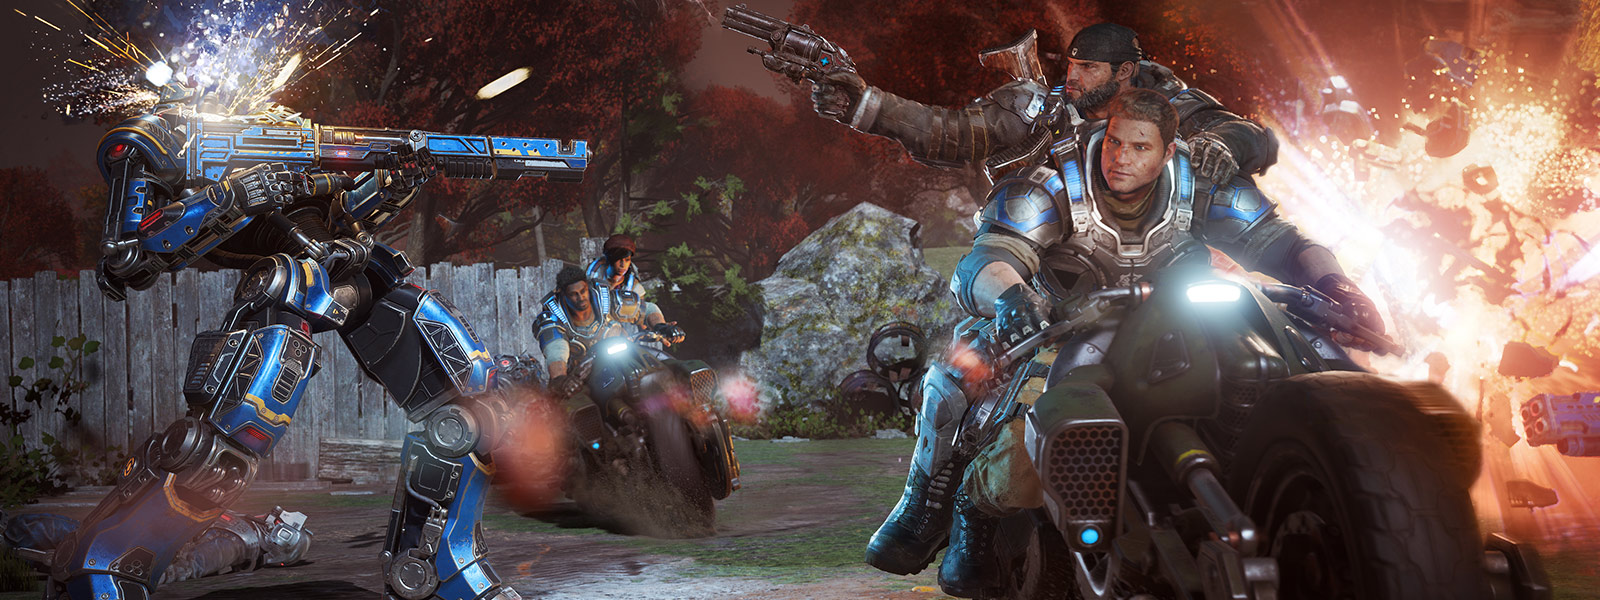 JD Fenix og vennene hans avfyrer våpen og kjører motorsykler i et slag i spillet Gears of War 4